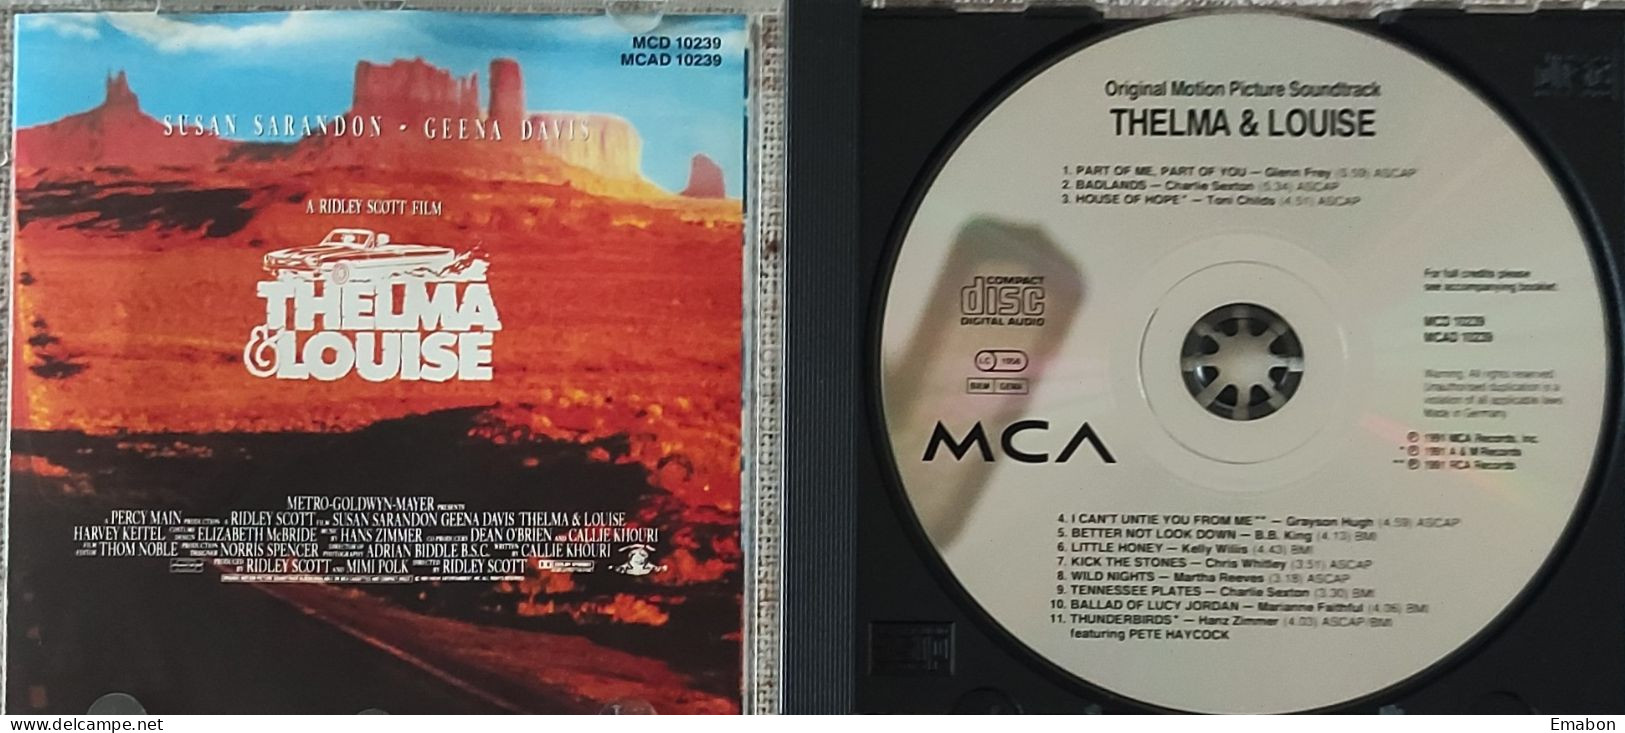 BORGATTA - FILM MUSIC  - Cd  RIDLEY SCOTT - THELMA & LOUISE - MCA RECORDS 1991- USATO In Buono Stato - Musica Di Film